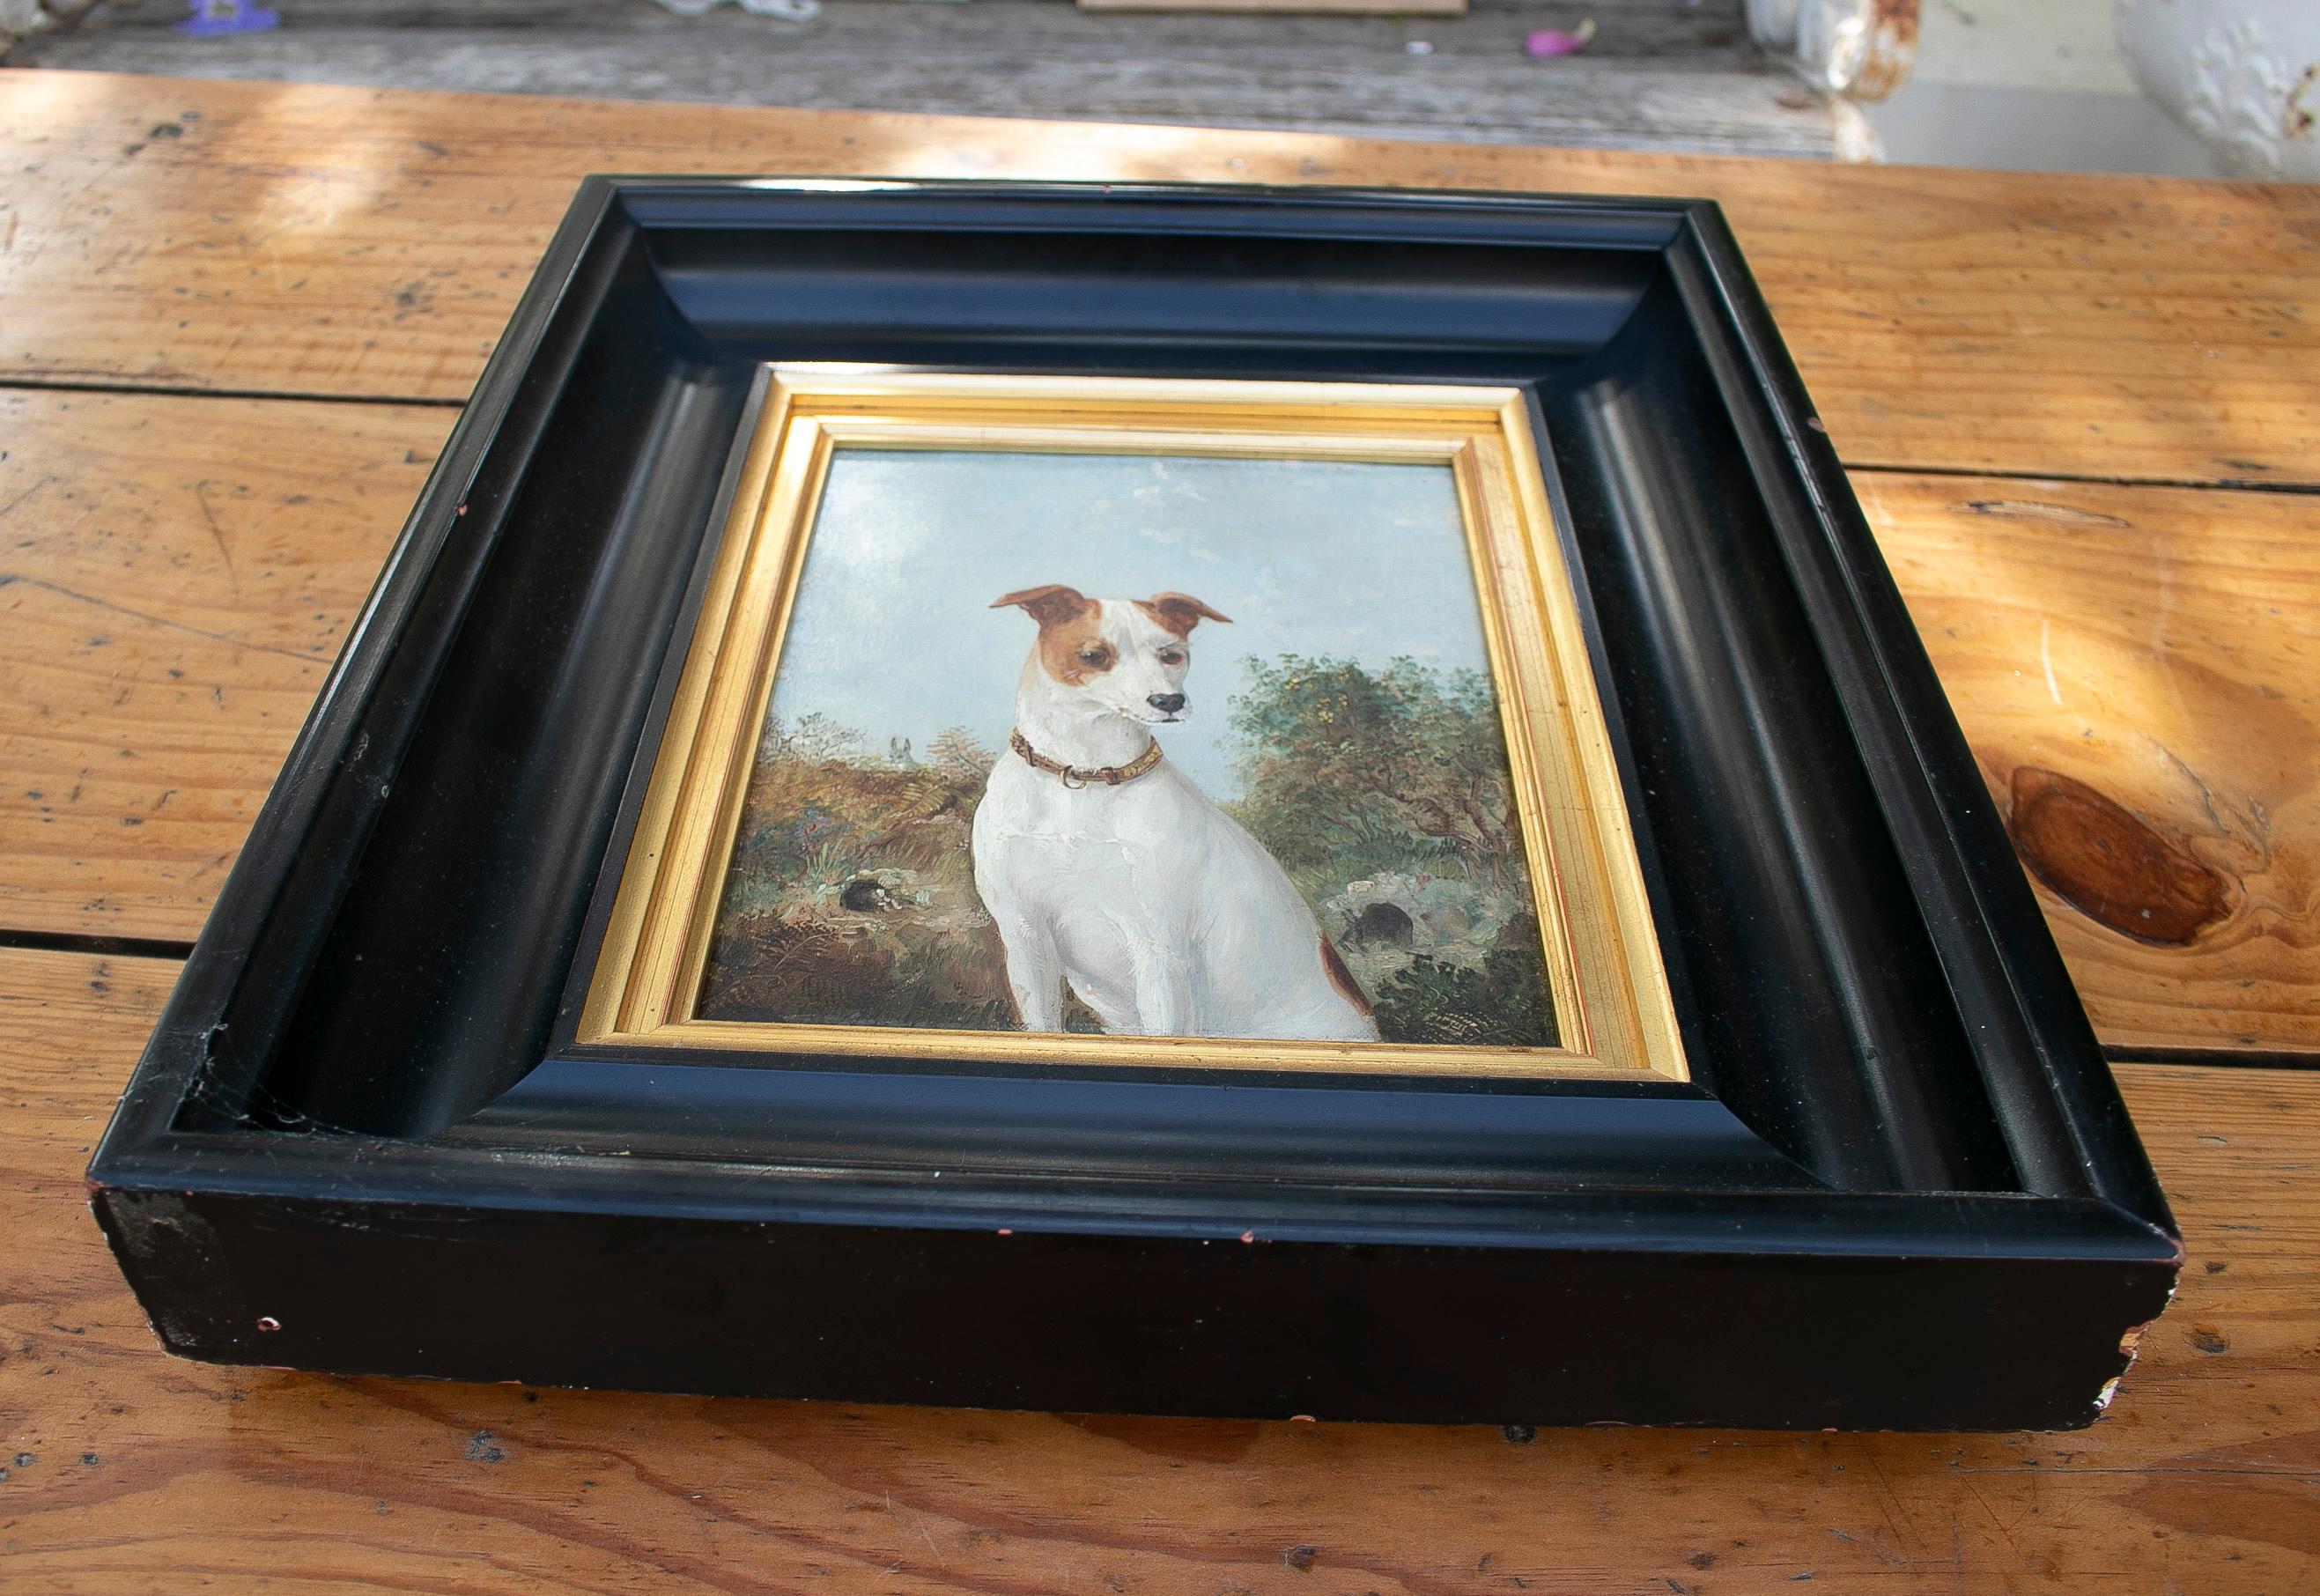 Antique peinture anglaise du 19ème siècle, huile sur toile, portrait de chien de chasse avec cadre noir et bois doré.

Dimensions incluant le cadre : 43 x 38 x 8cm.